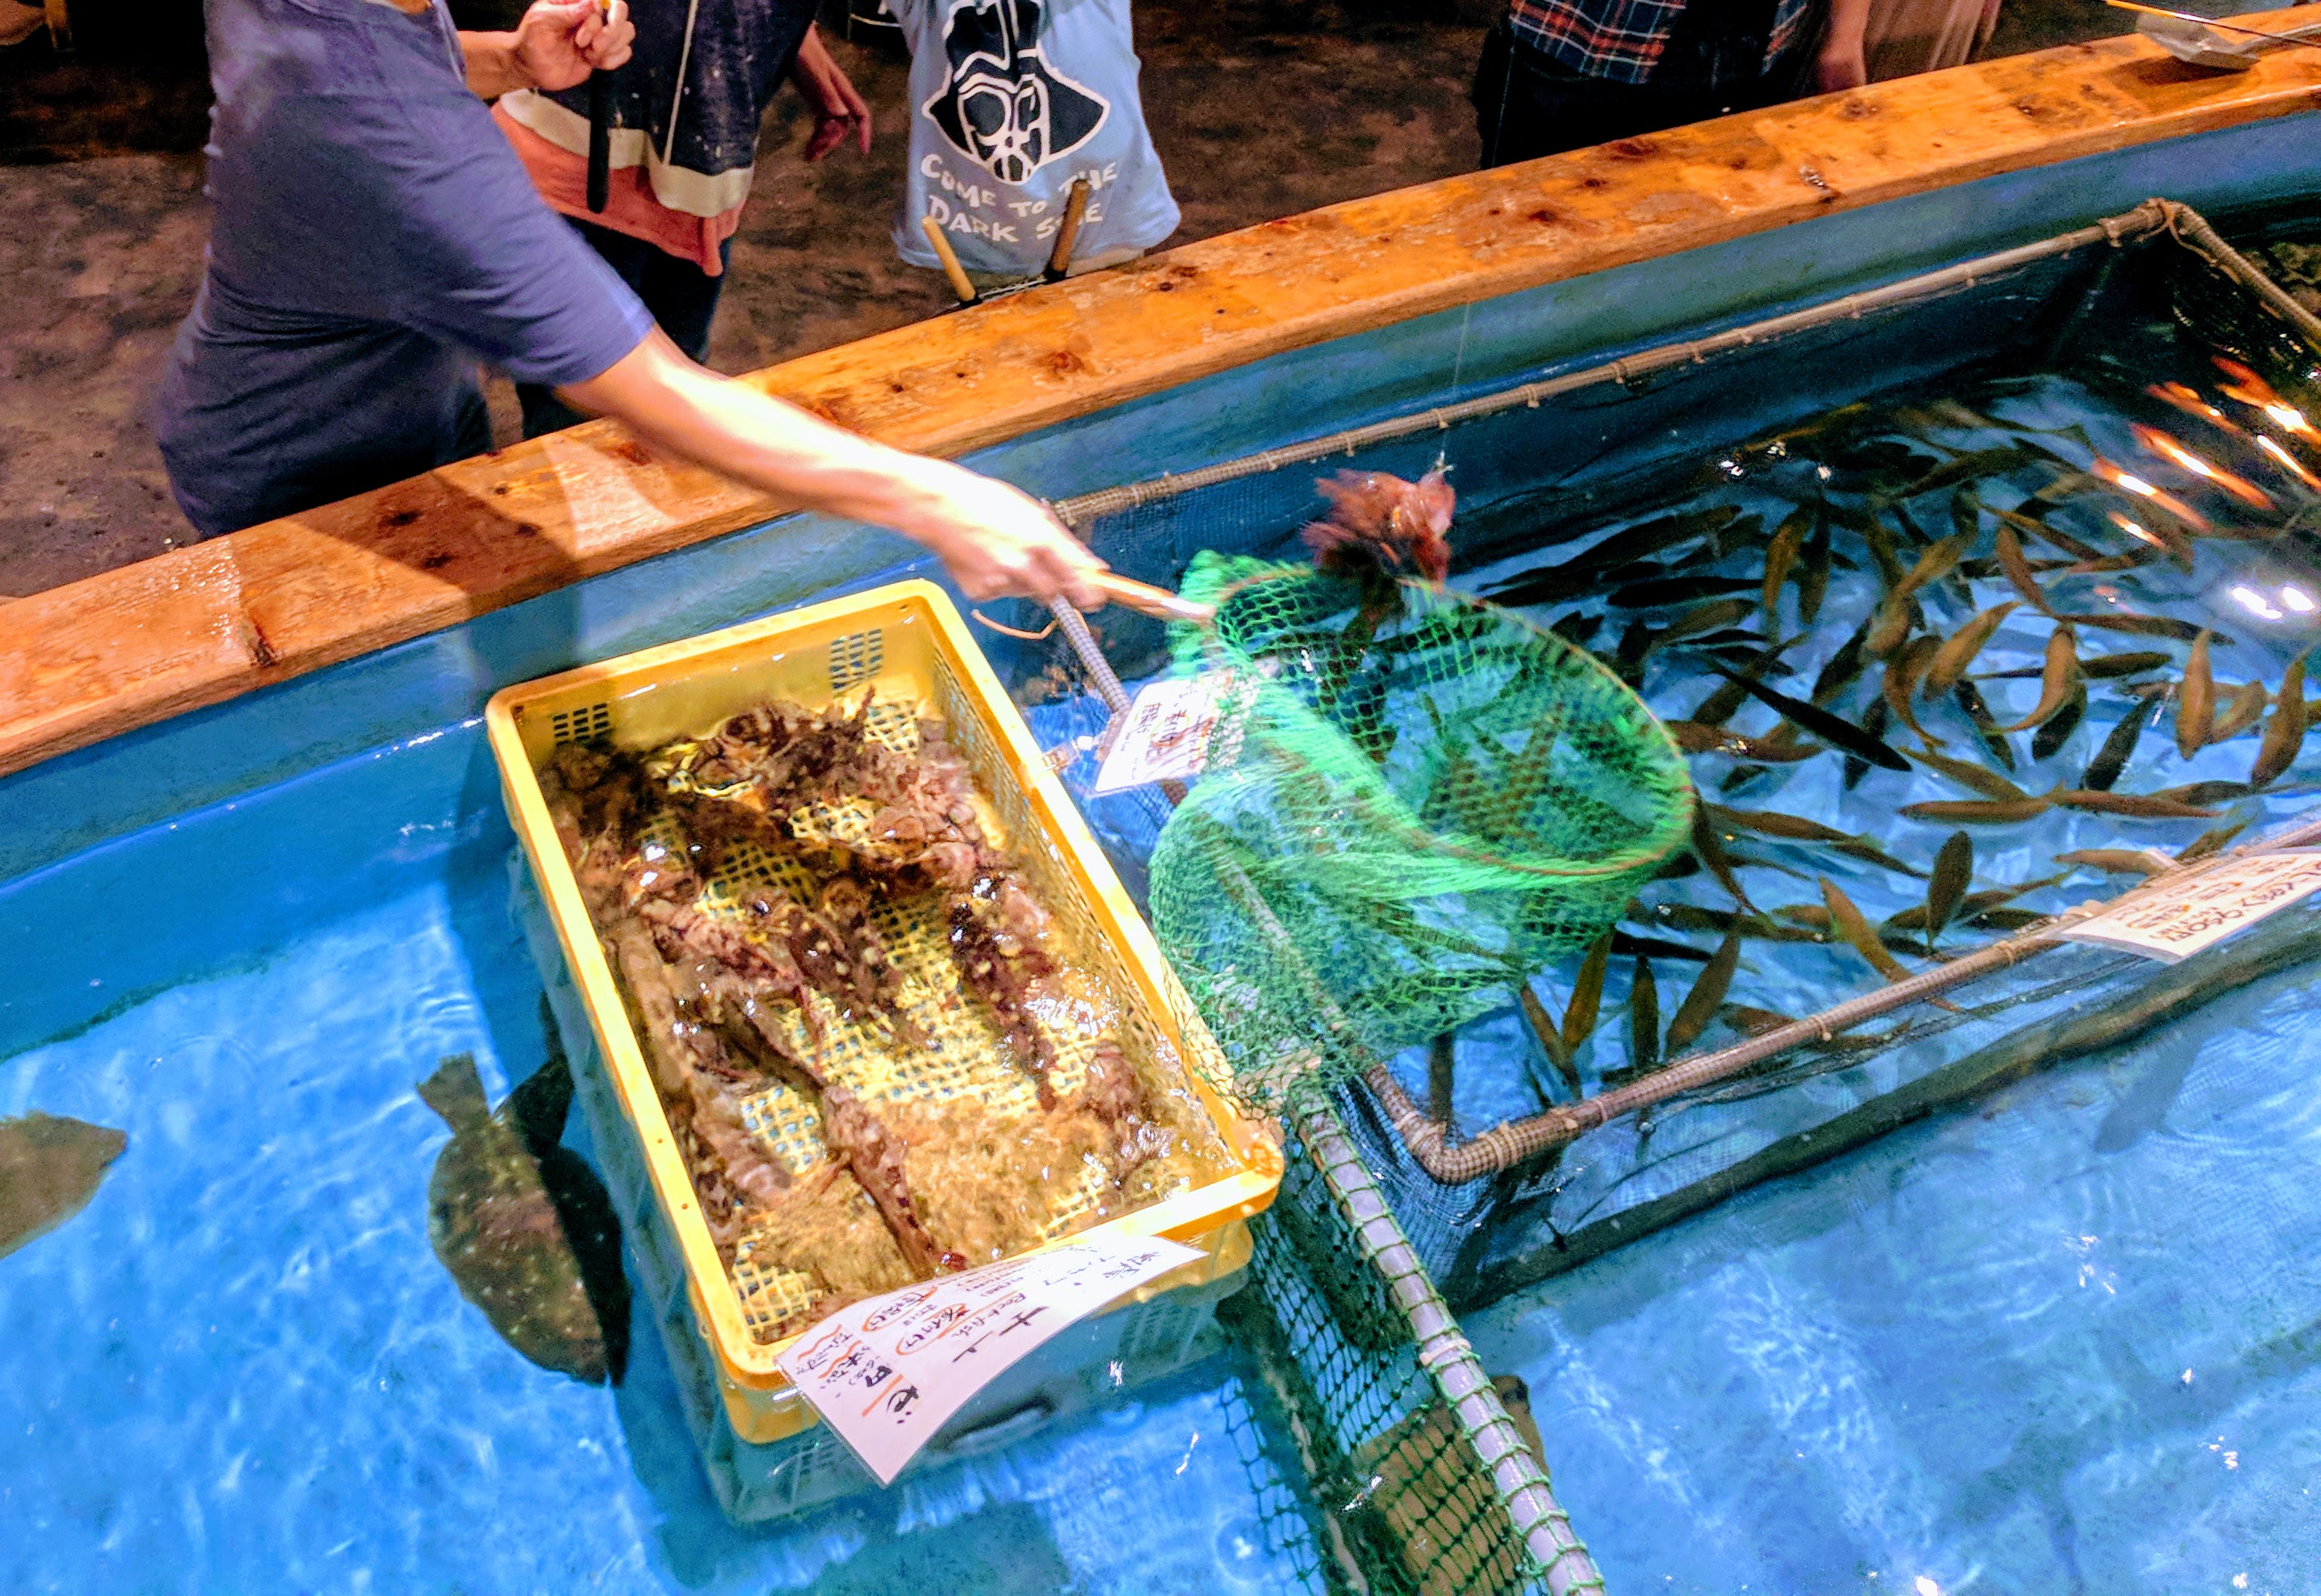 Tokyo – Zauo Fishing Restaurant